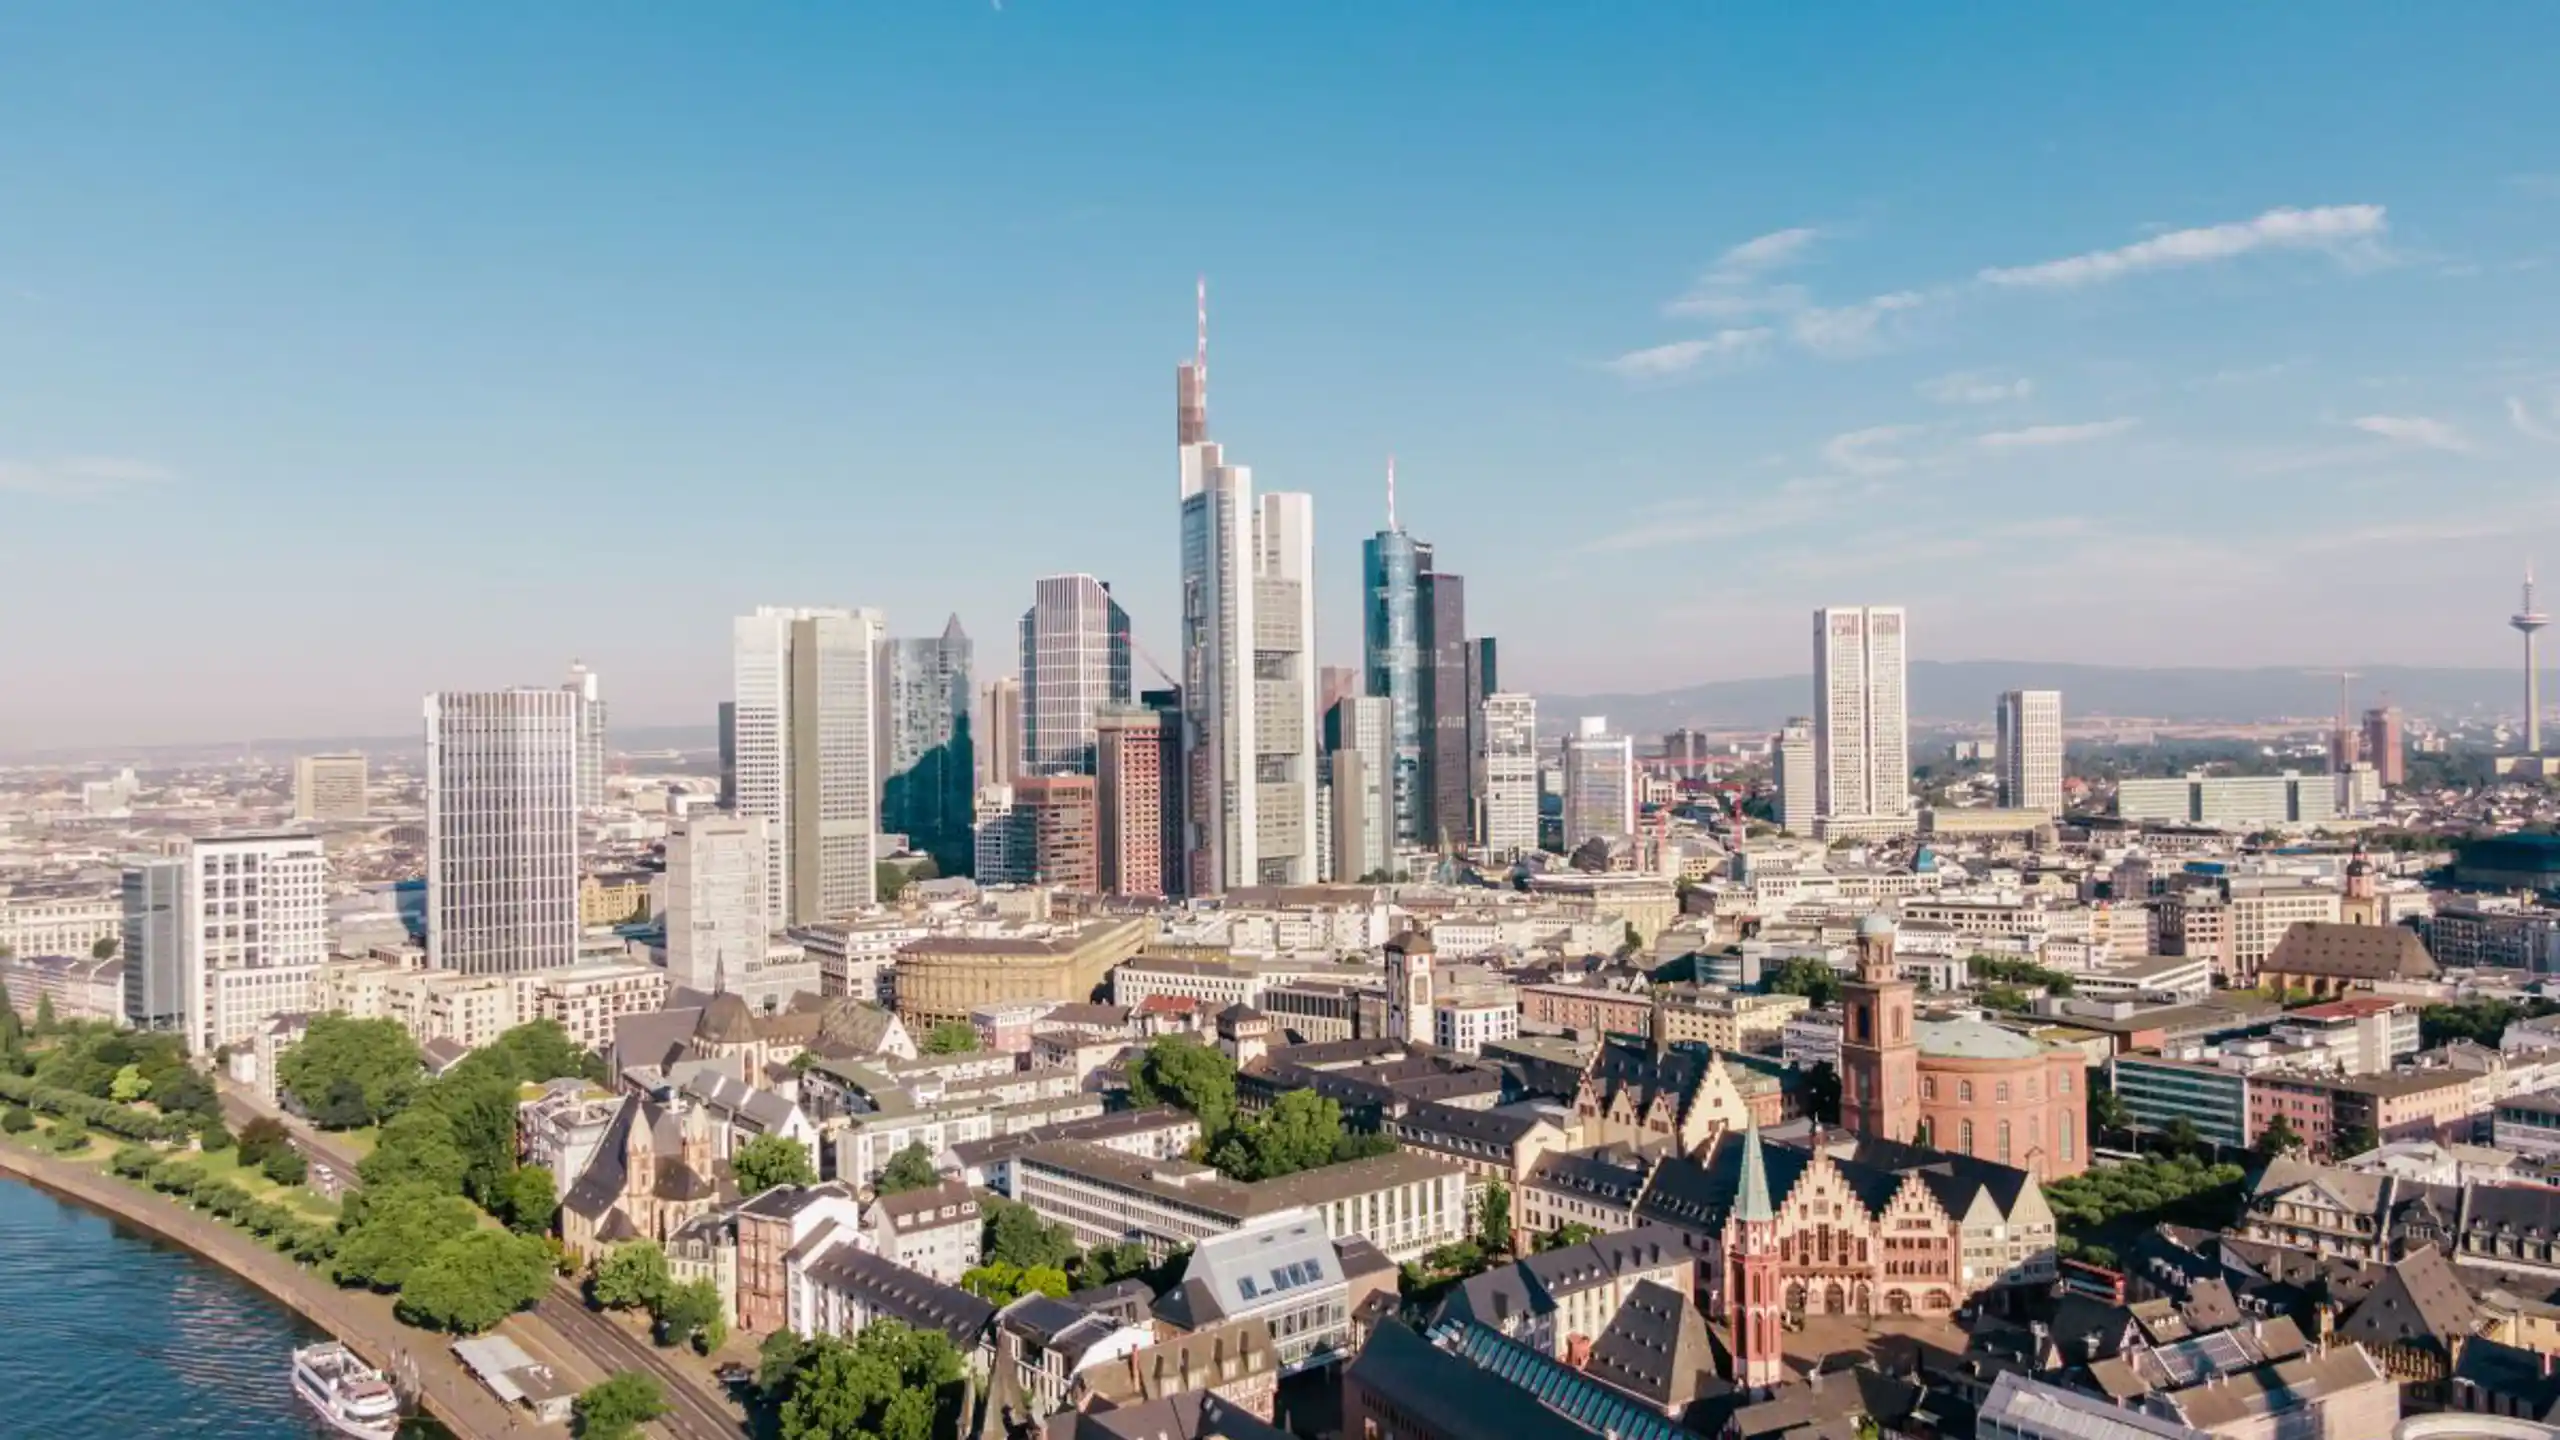 Aerial Shot Of Skyscrapers In Frankfurt Germany Wi 2023 11 27 05 04 44 Utc